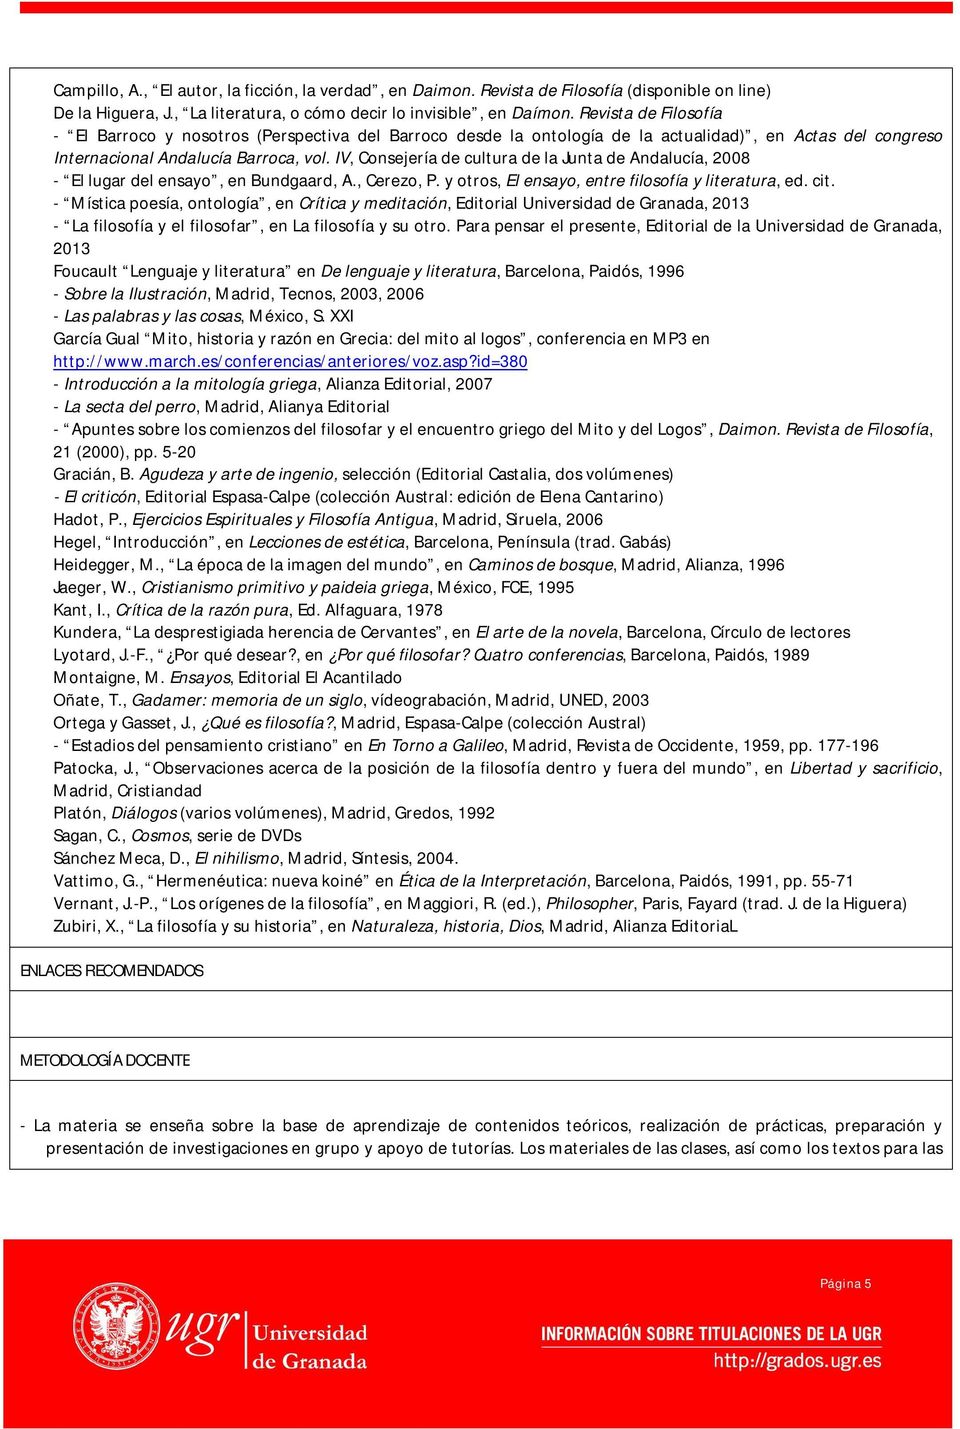 IV, Consejería de cultura de la Junta de Andalucía, 2008 - El lugar del ensayo, en Bundgaard, A., Cerezo, P. y otros, El ensayo, entre filosofía y literatura, ed. cit.